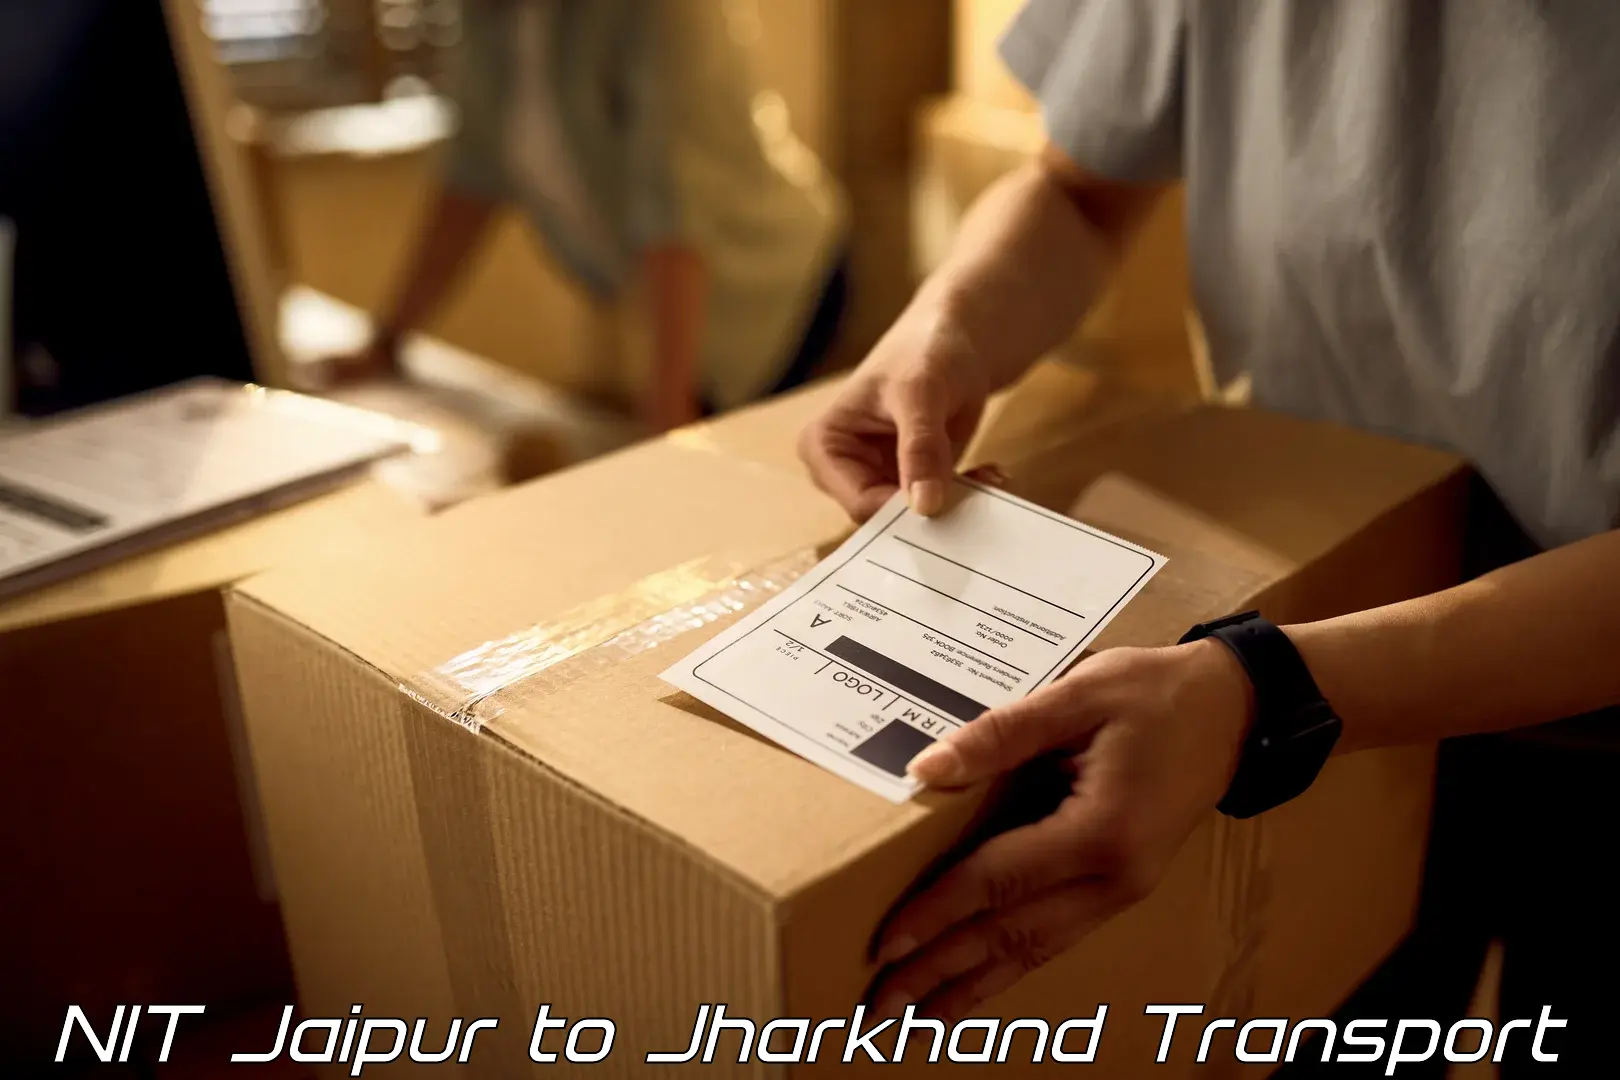 Furniture transport service NIT Jaipur to Giridih